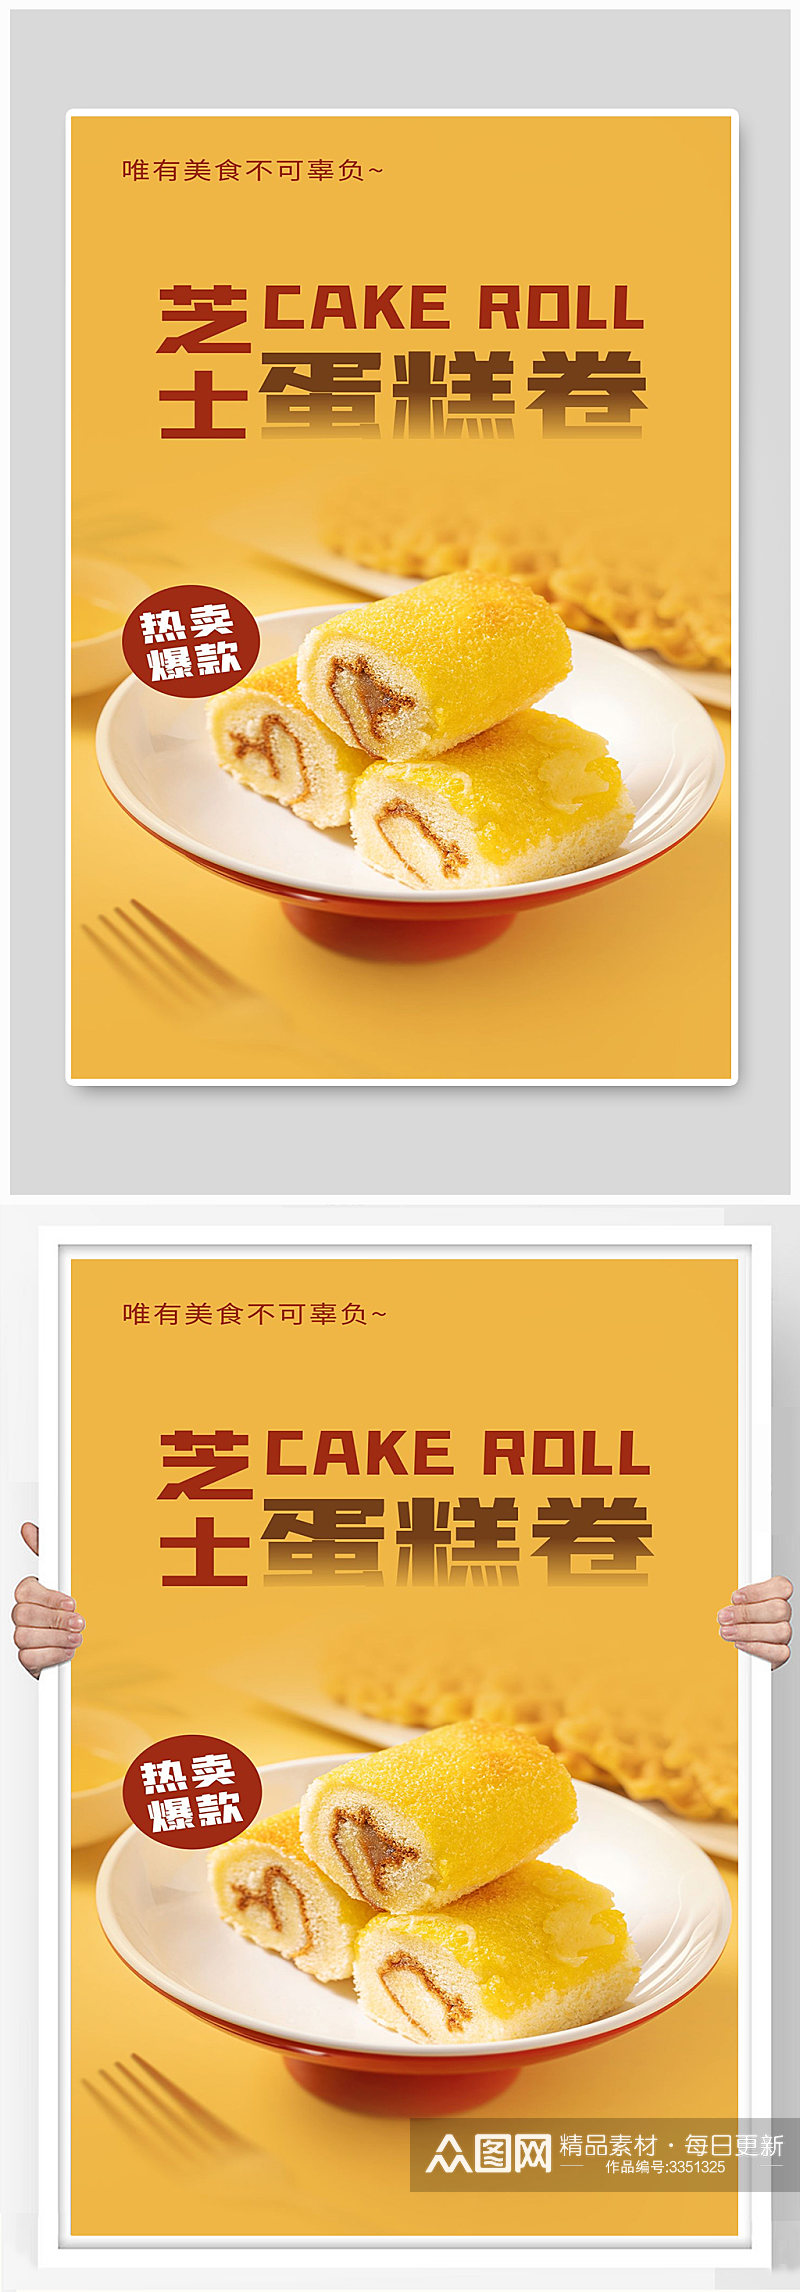 甜品芝士蛋糕卷美食甜点面包宣传海报素材